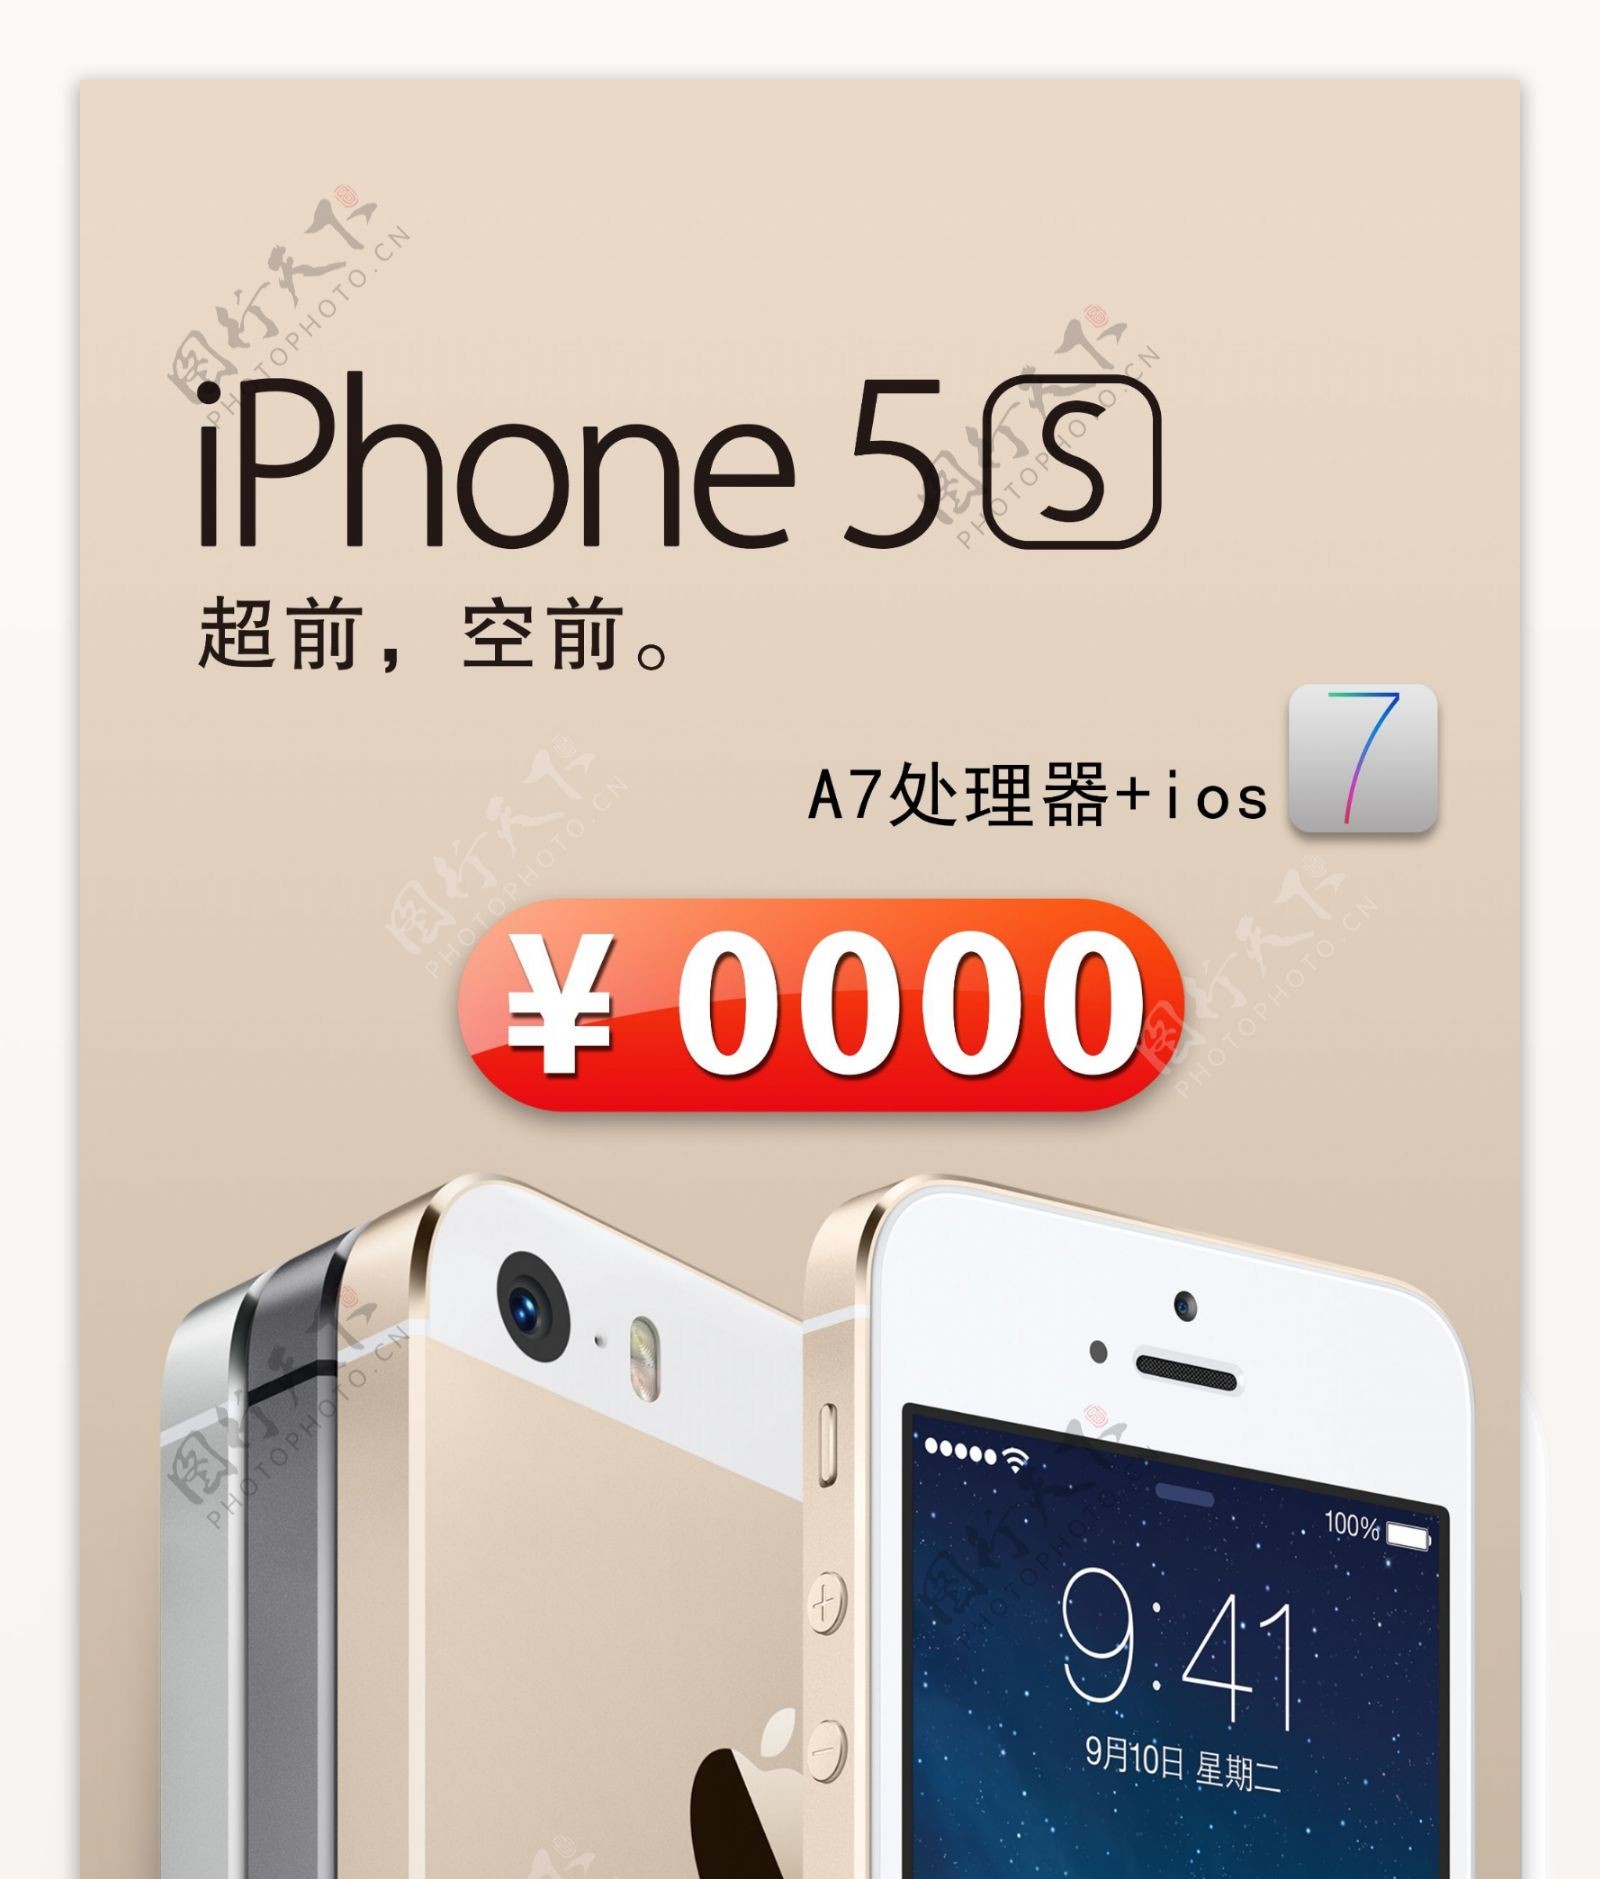 iphone5s促销图片